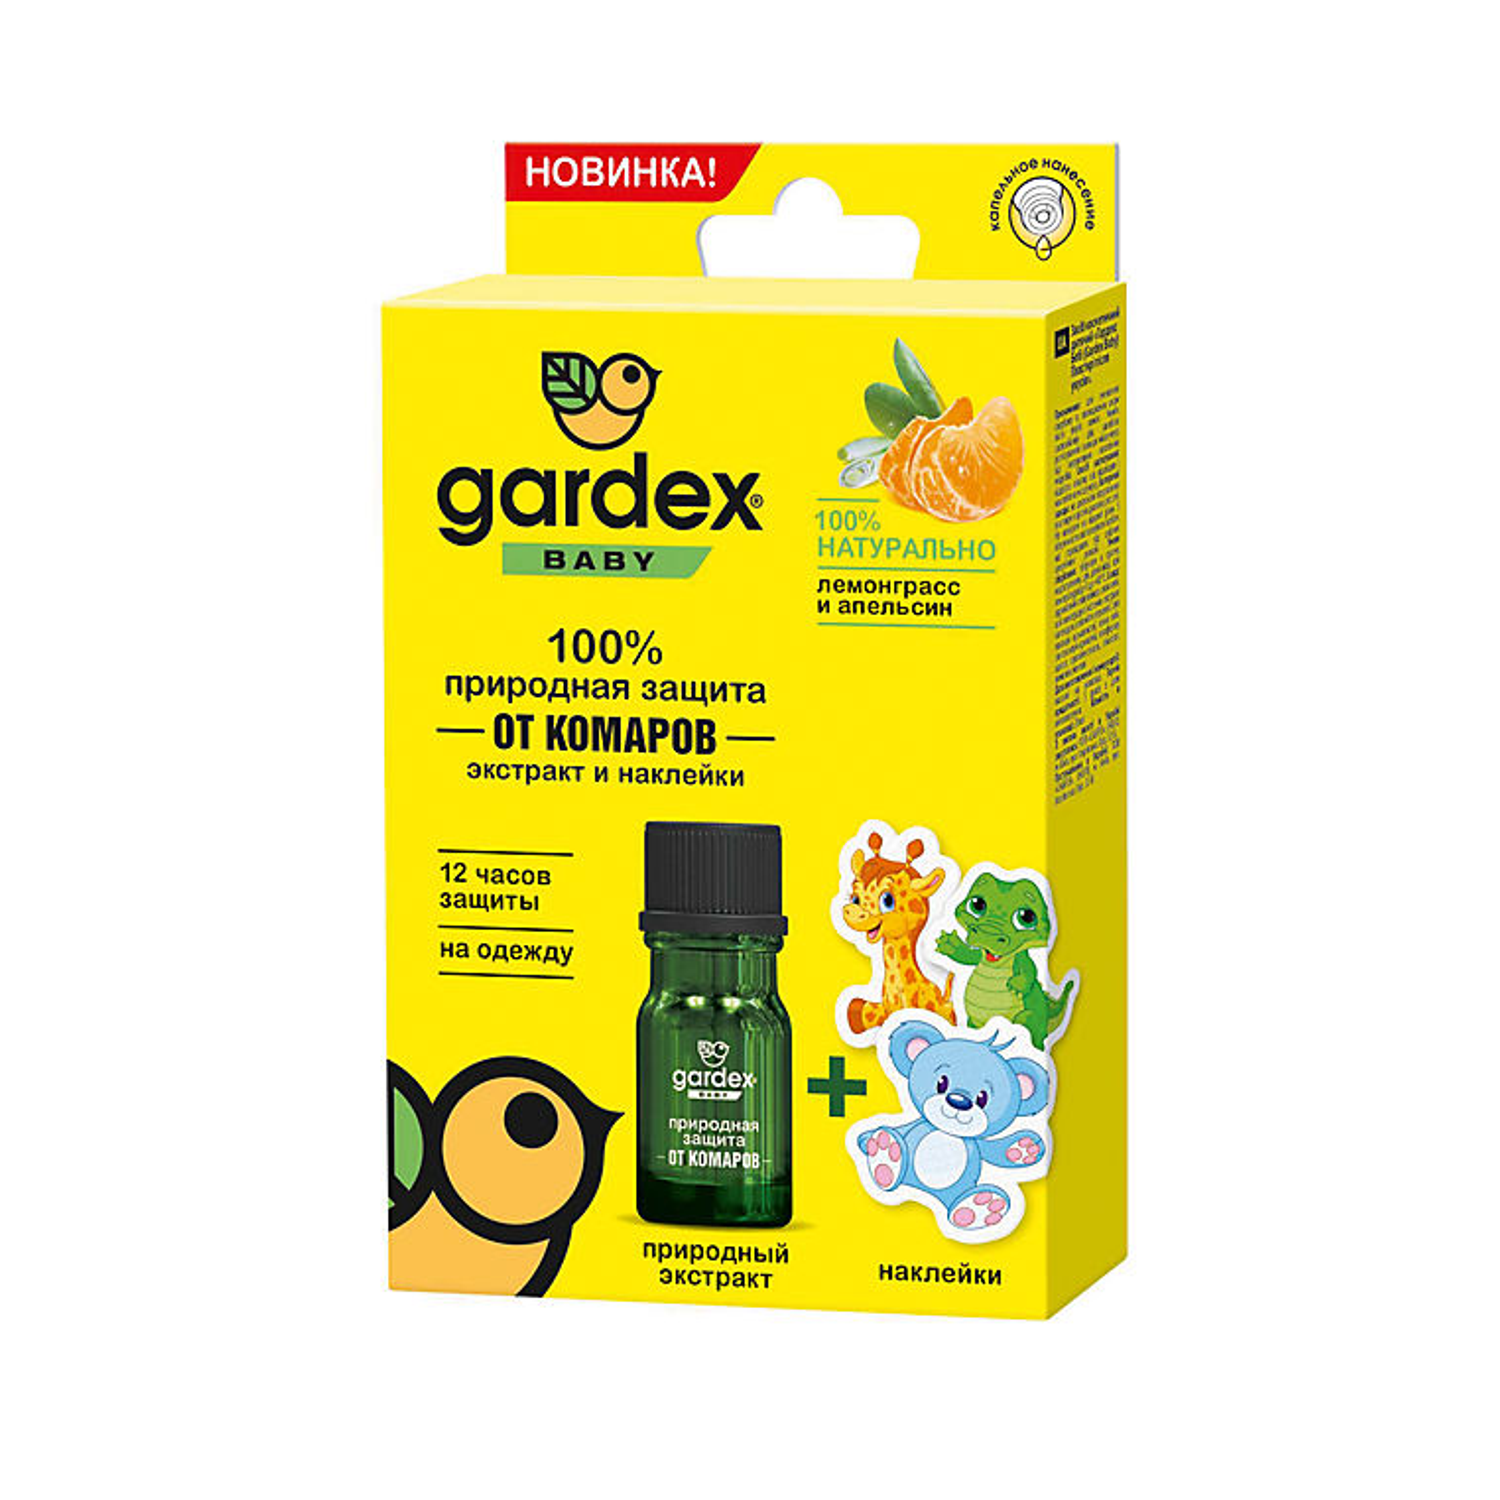 Экстракт от комаров Gardex Baby Baby Природная защита с наклейками 03.19.10.0159 - фото 1